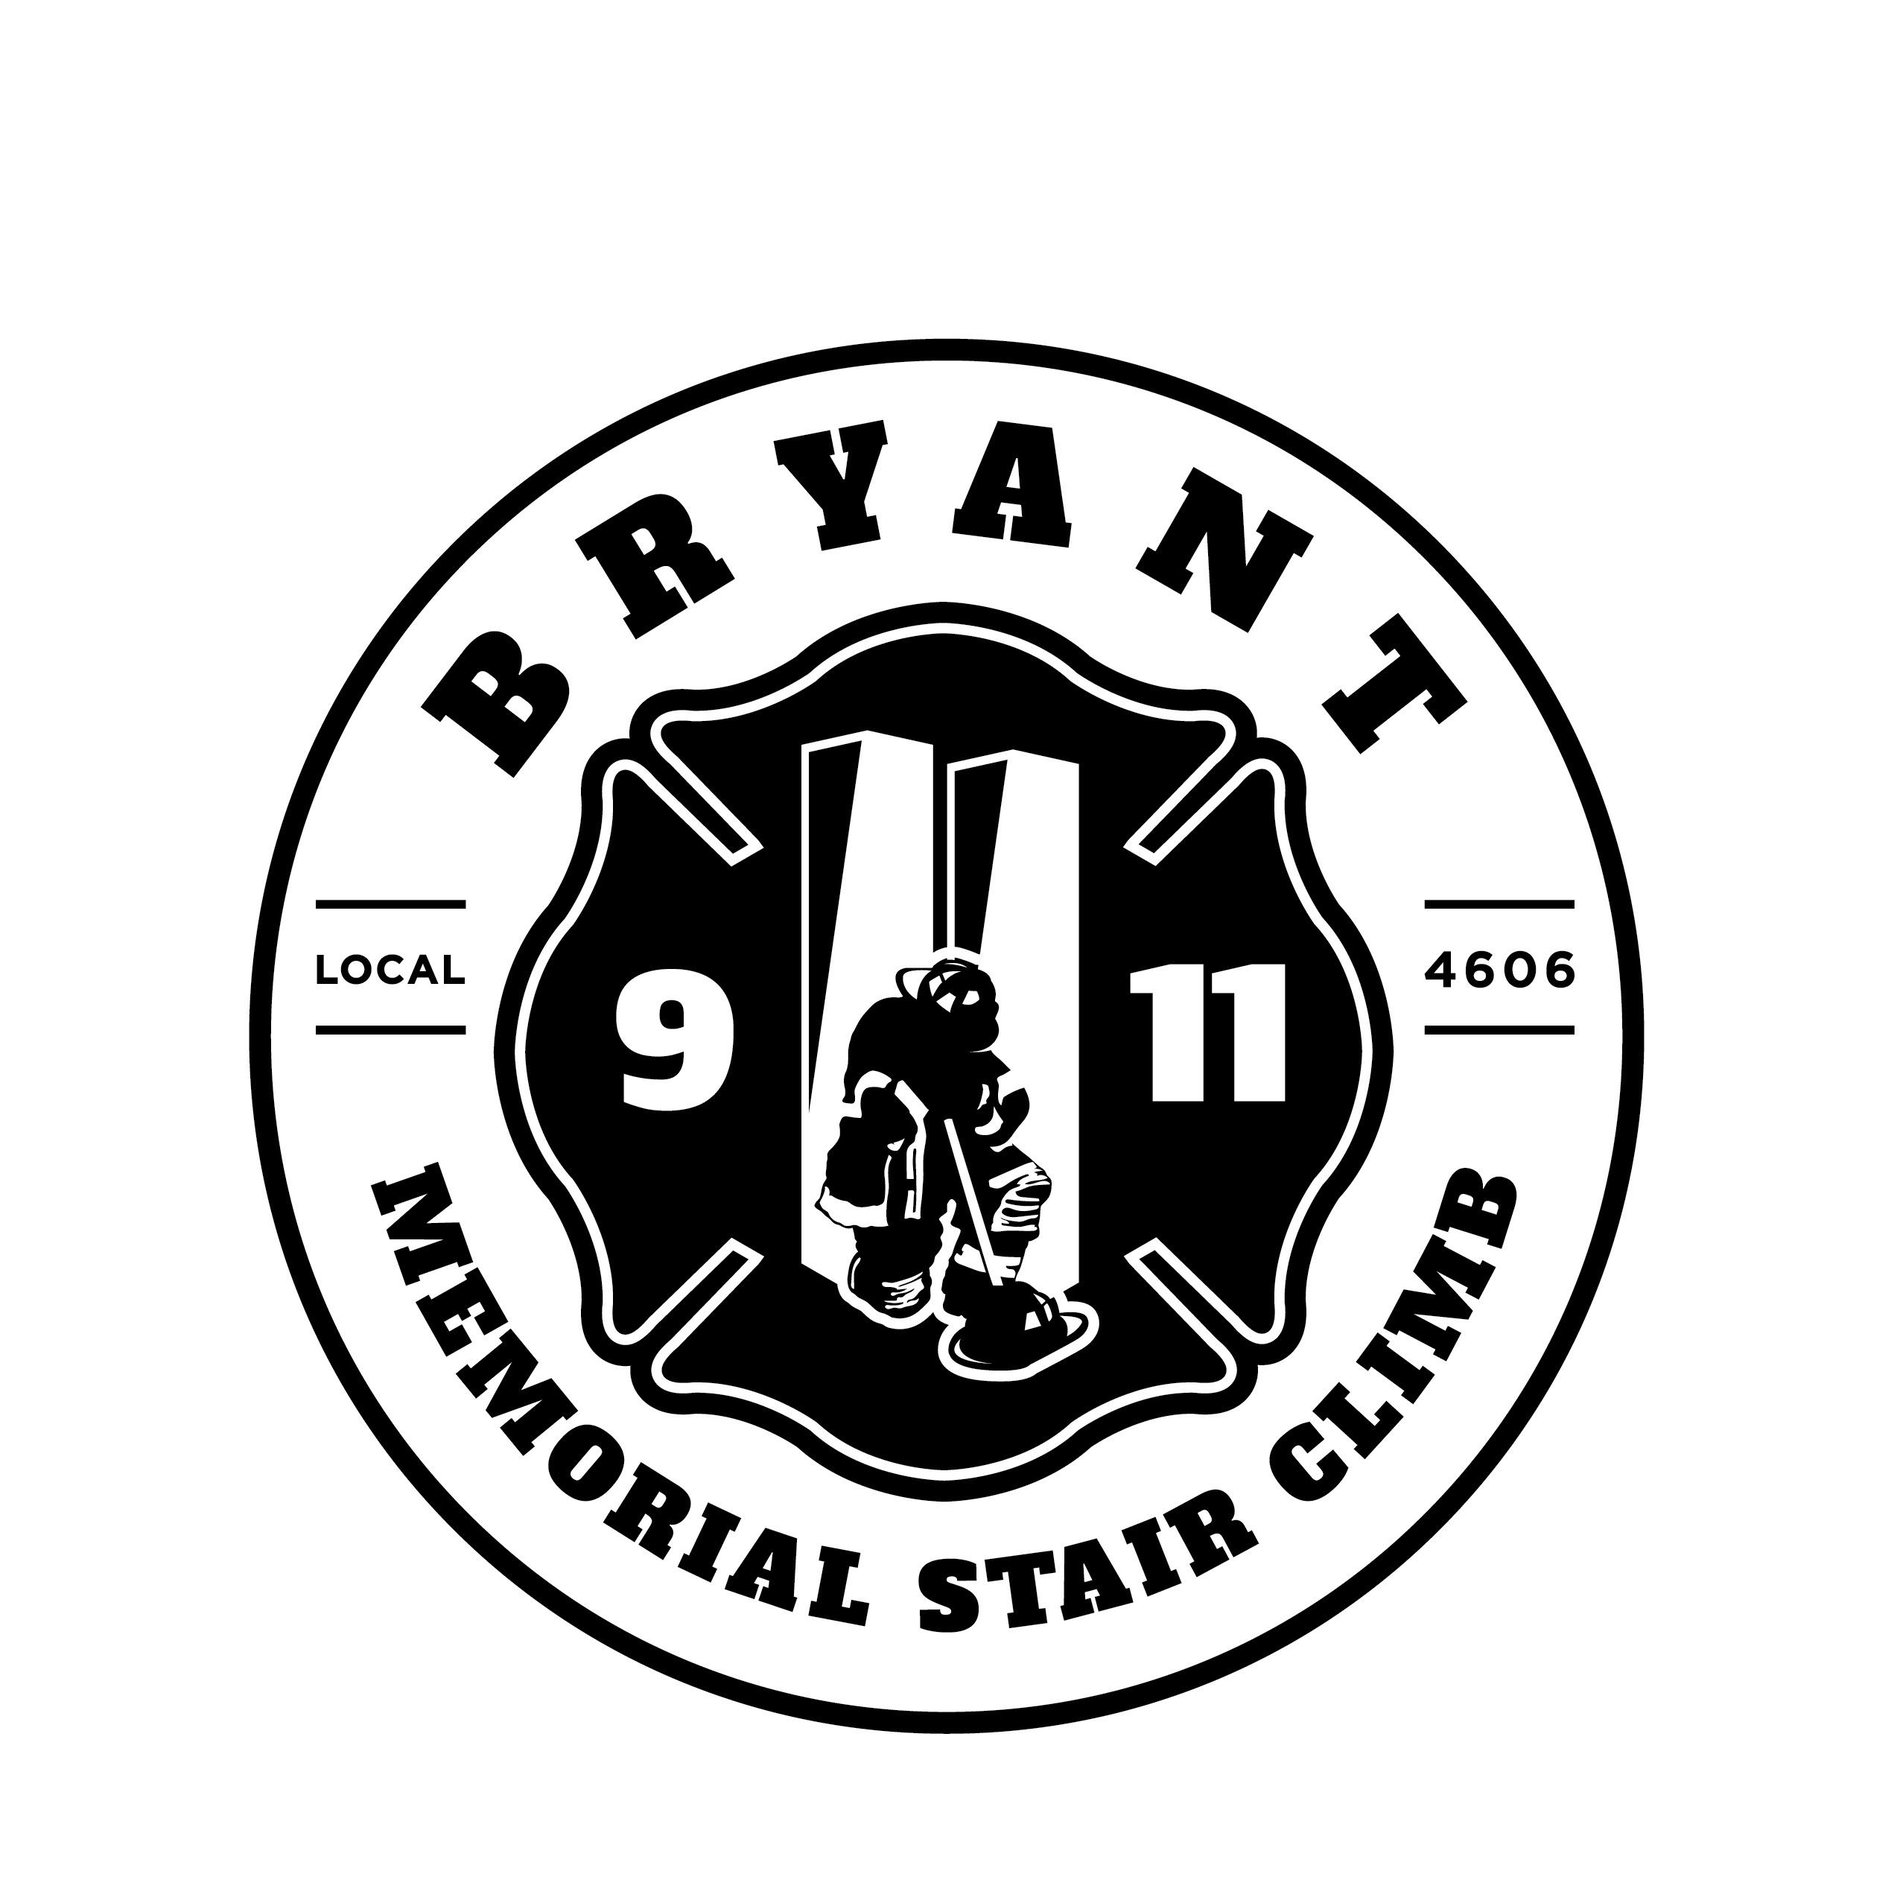 Bryant 9/11 Memorial Stair climb